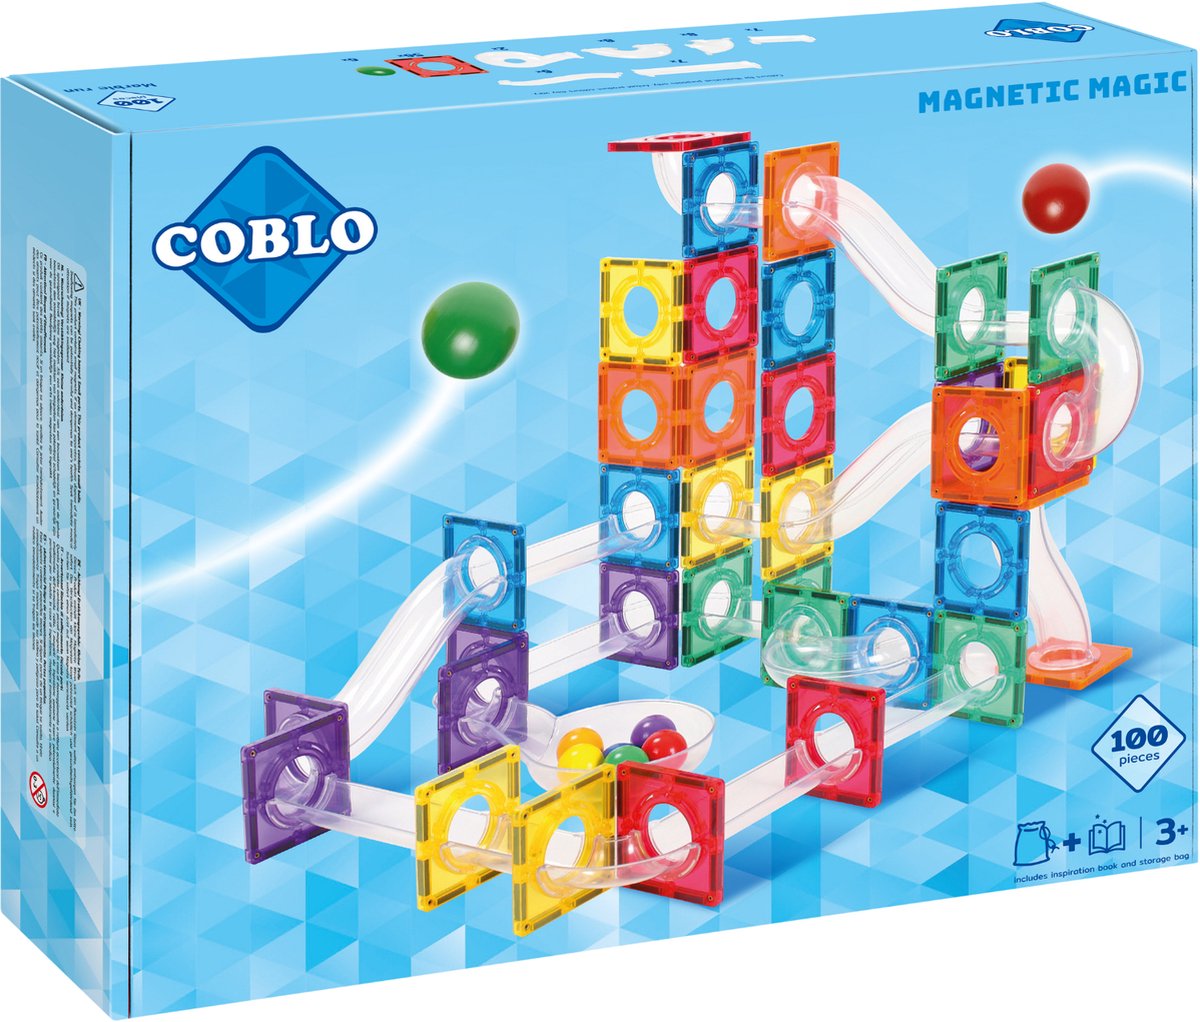 Coblo Classic Knikkerbaan 100 stuks - Magnetisch speelgoed - Constructiespeelgoed - Magnetische bouwstenen - STEM speelgoed - Cadeau kind - Speelgoed 3 jaar t/m 12 jaar